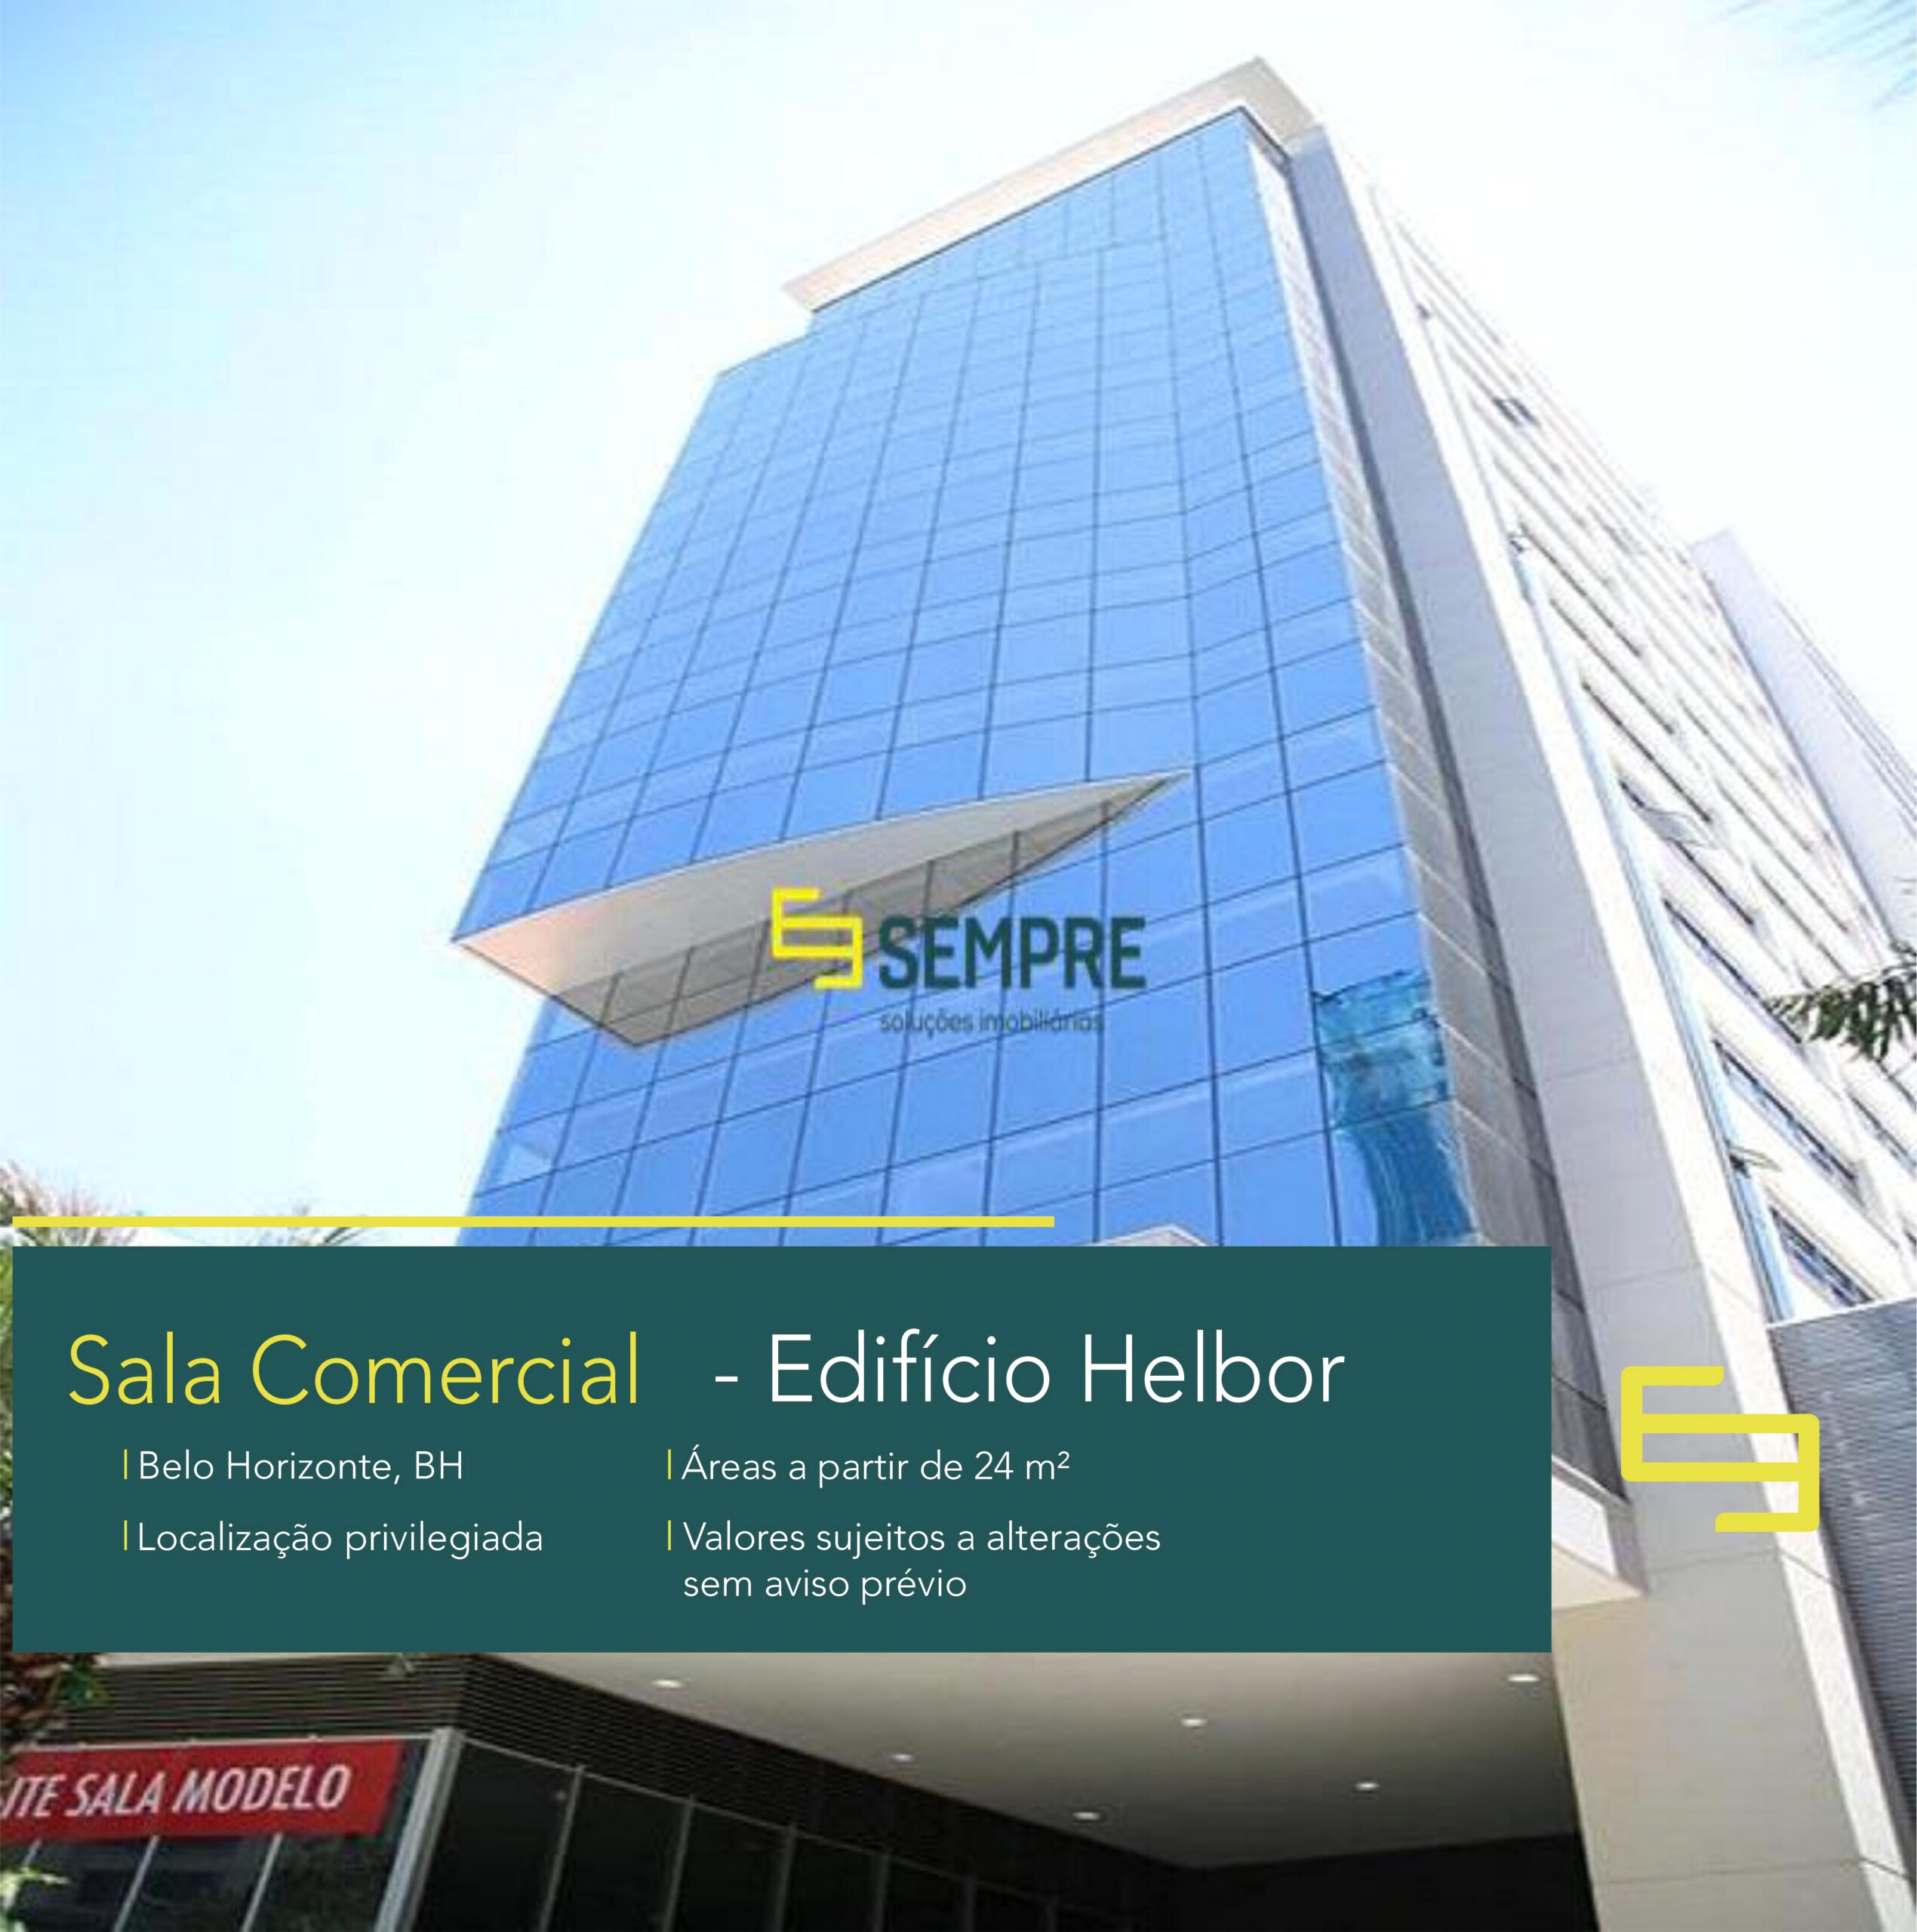 Sala corporativa para vender na Savassi em Belo Horizonte, localização privilegiada! O ponto comercial conta, sobretudo, com área de 463 m².